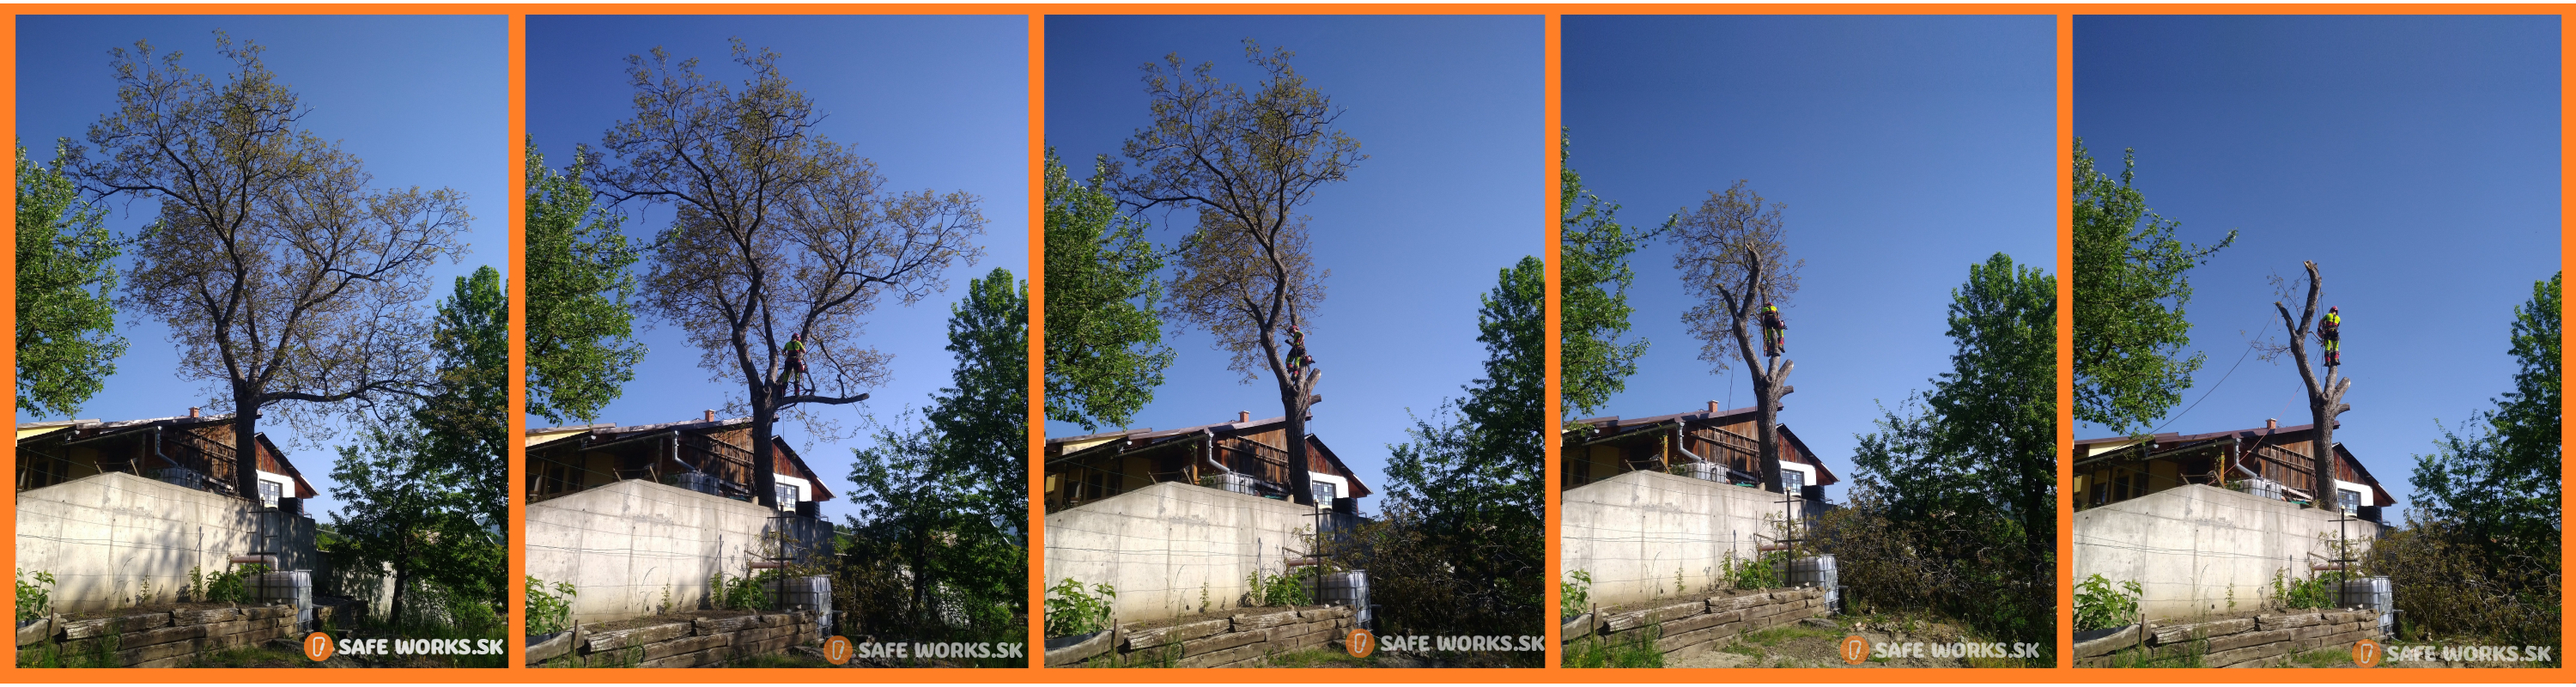 spilenie nebezpečneho stromu orecha na kralíkoch, profesionálny pilčík, lacné pílenie stromov, fotosnímka postupného pílenia stromu